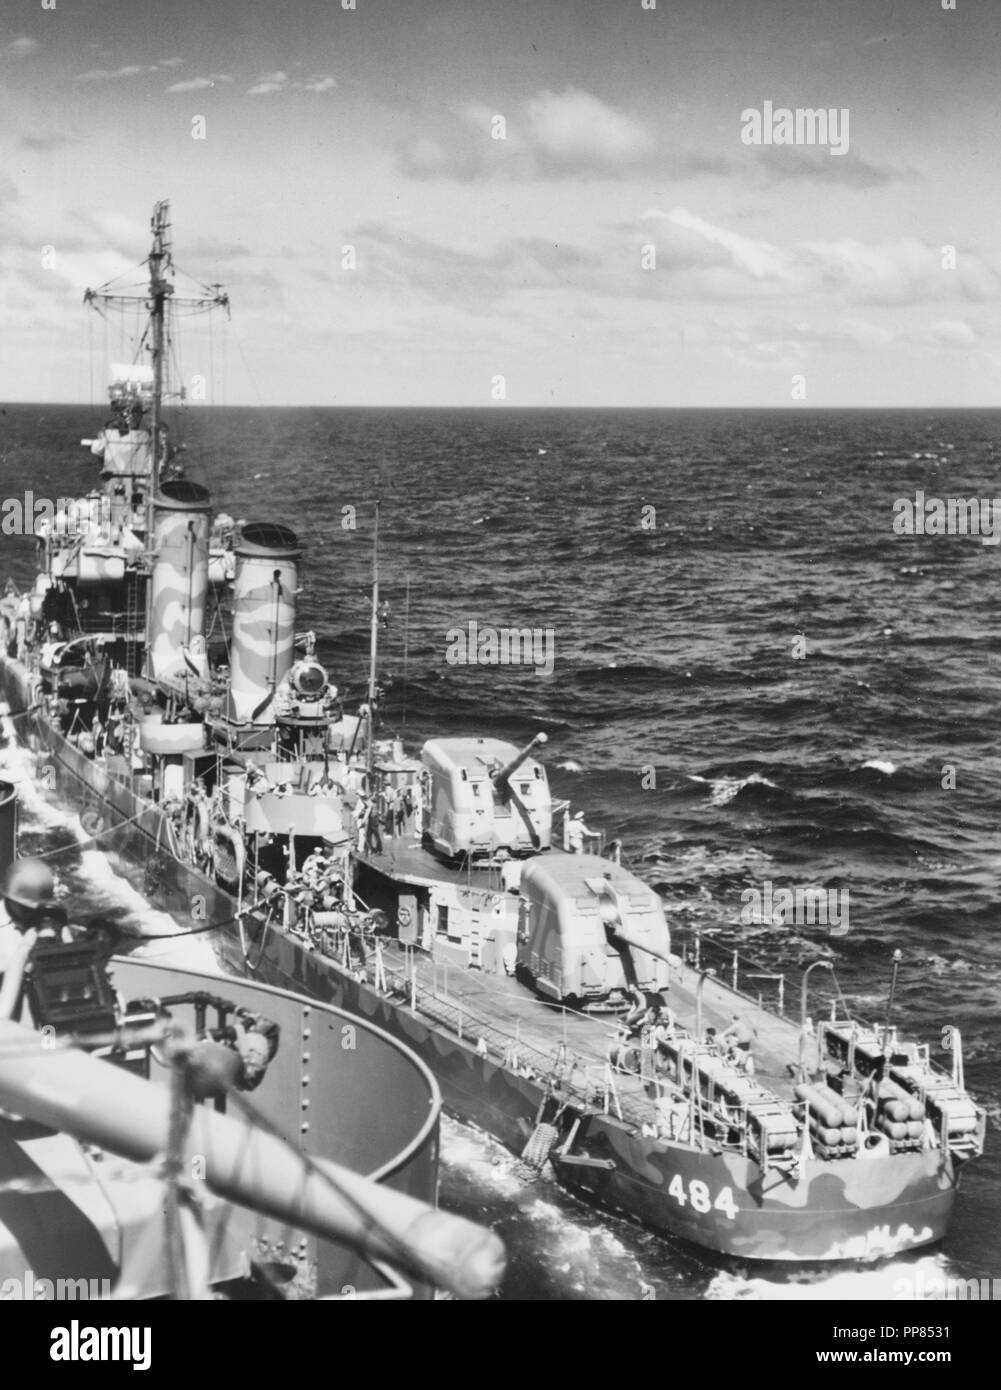 USS Buchanan (DD-484) avitaillement de l'USS Wasp (CV-7) en route vers la zone d'invasion, Guadalcanal-Tulagi 3 août 1942. Buchanan est peint en camouflage mesure 12 (modification). Remarque les grenades dans les racks et stern sur K-guns, garde-boue montés le long de ses côtés, et le ravitaillement en vol d'un drapeau rouge de sa misaine. Notez également l'arme à feu à bord, Guêpe 5/38 en bas à gauche. Banque D'Images